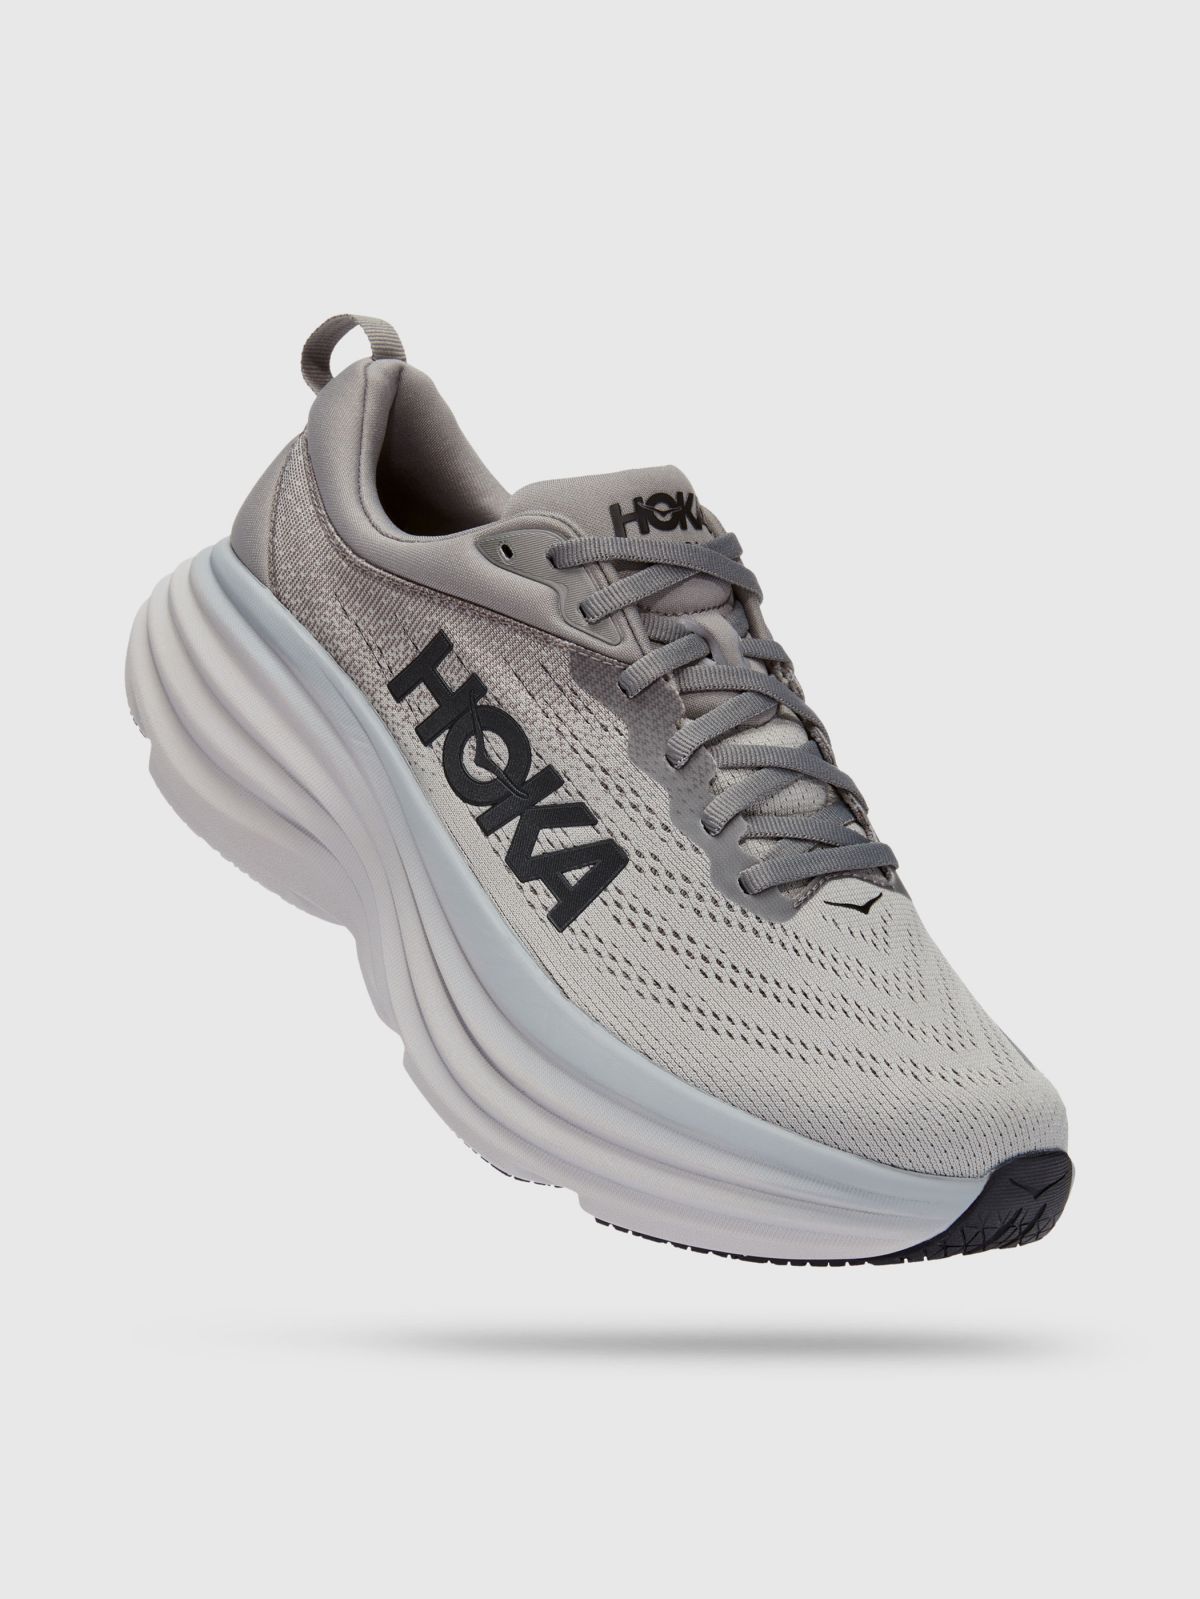  נעלי ריצה  Bondi 8 X wide / גברים של HOKA